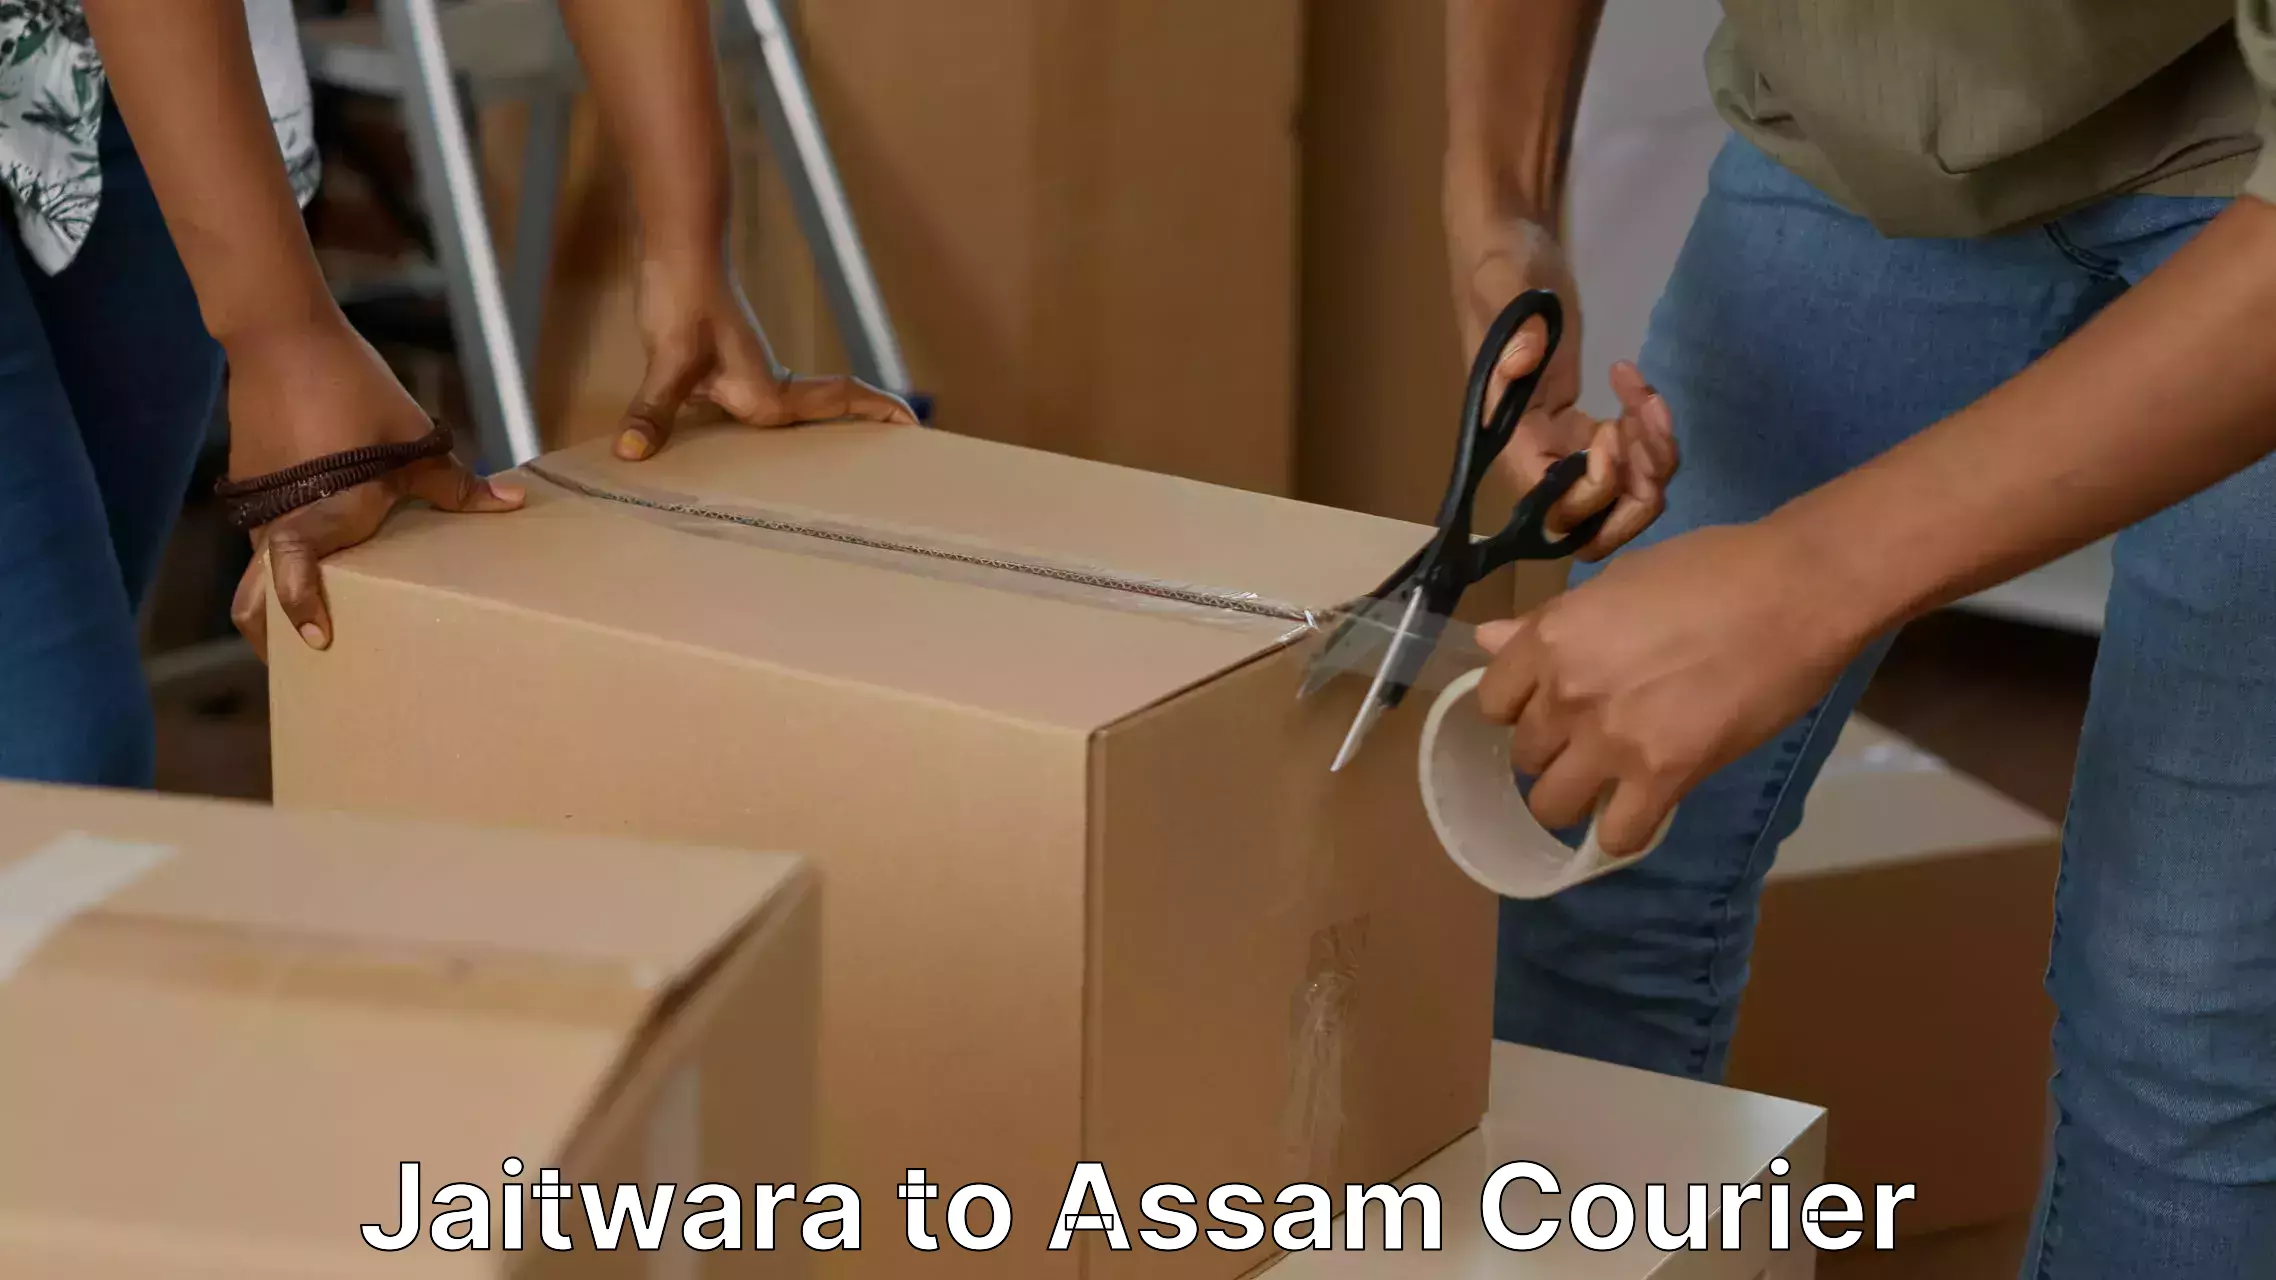 Professional furniture movers in Jaitwara to Jorabat